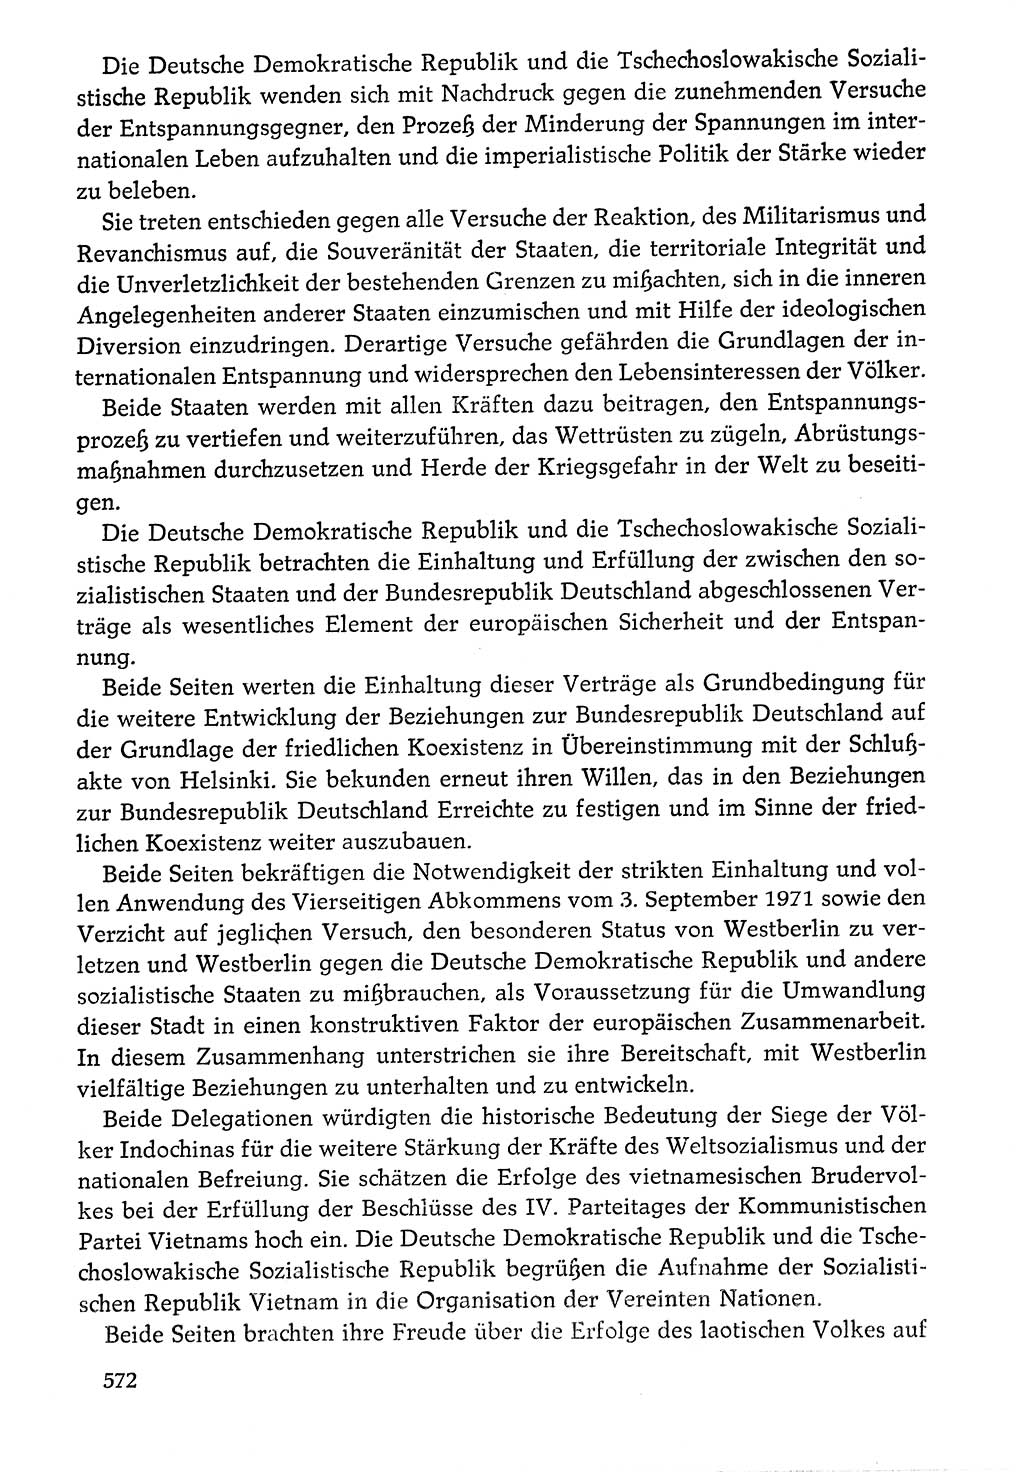 Dokumente der Sozialistischen Einheitspartei Deutschlands (SED) [Deutsche Demokratische Republik (DDR)] 1976-1977, Seite 572 (Dok. SED DDR 1976-1977, S. 572)